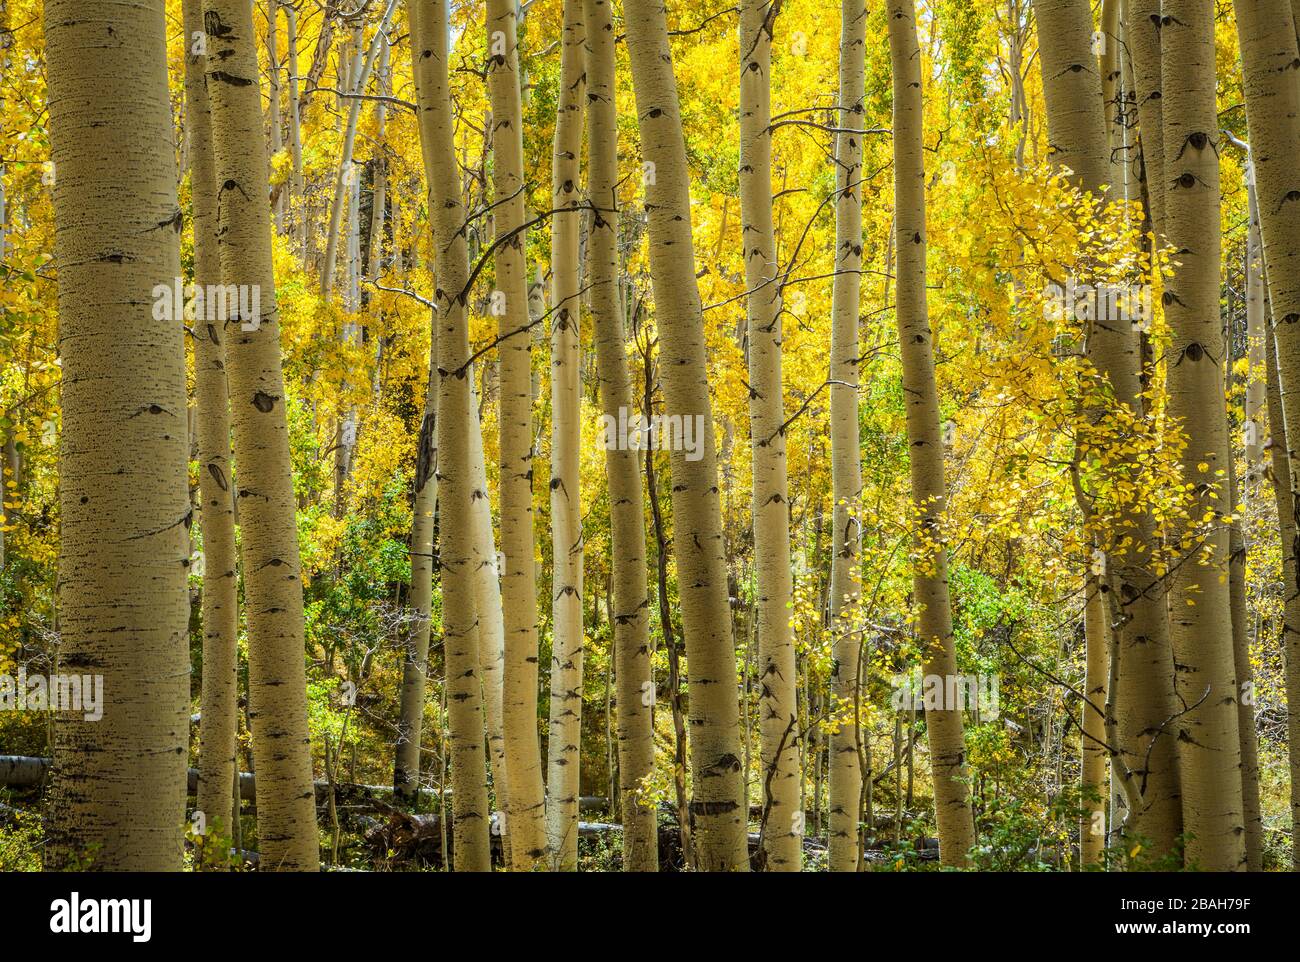 Aspen-Bäume in Herbstfarben, La Sal Mountains, Utah, USA. Stockfoto